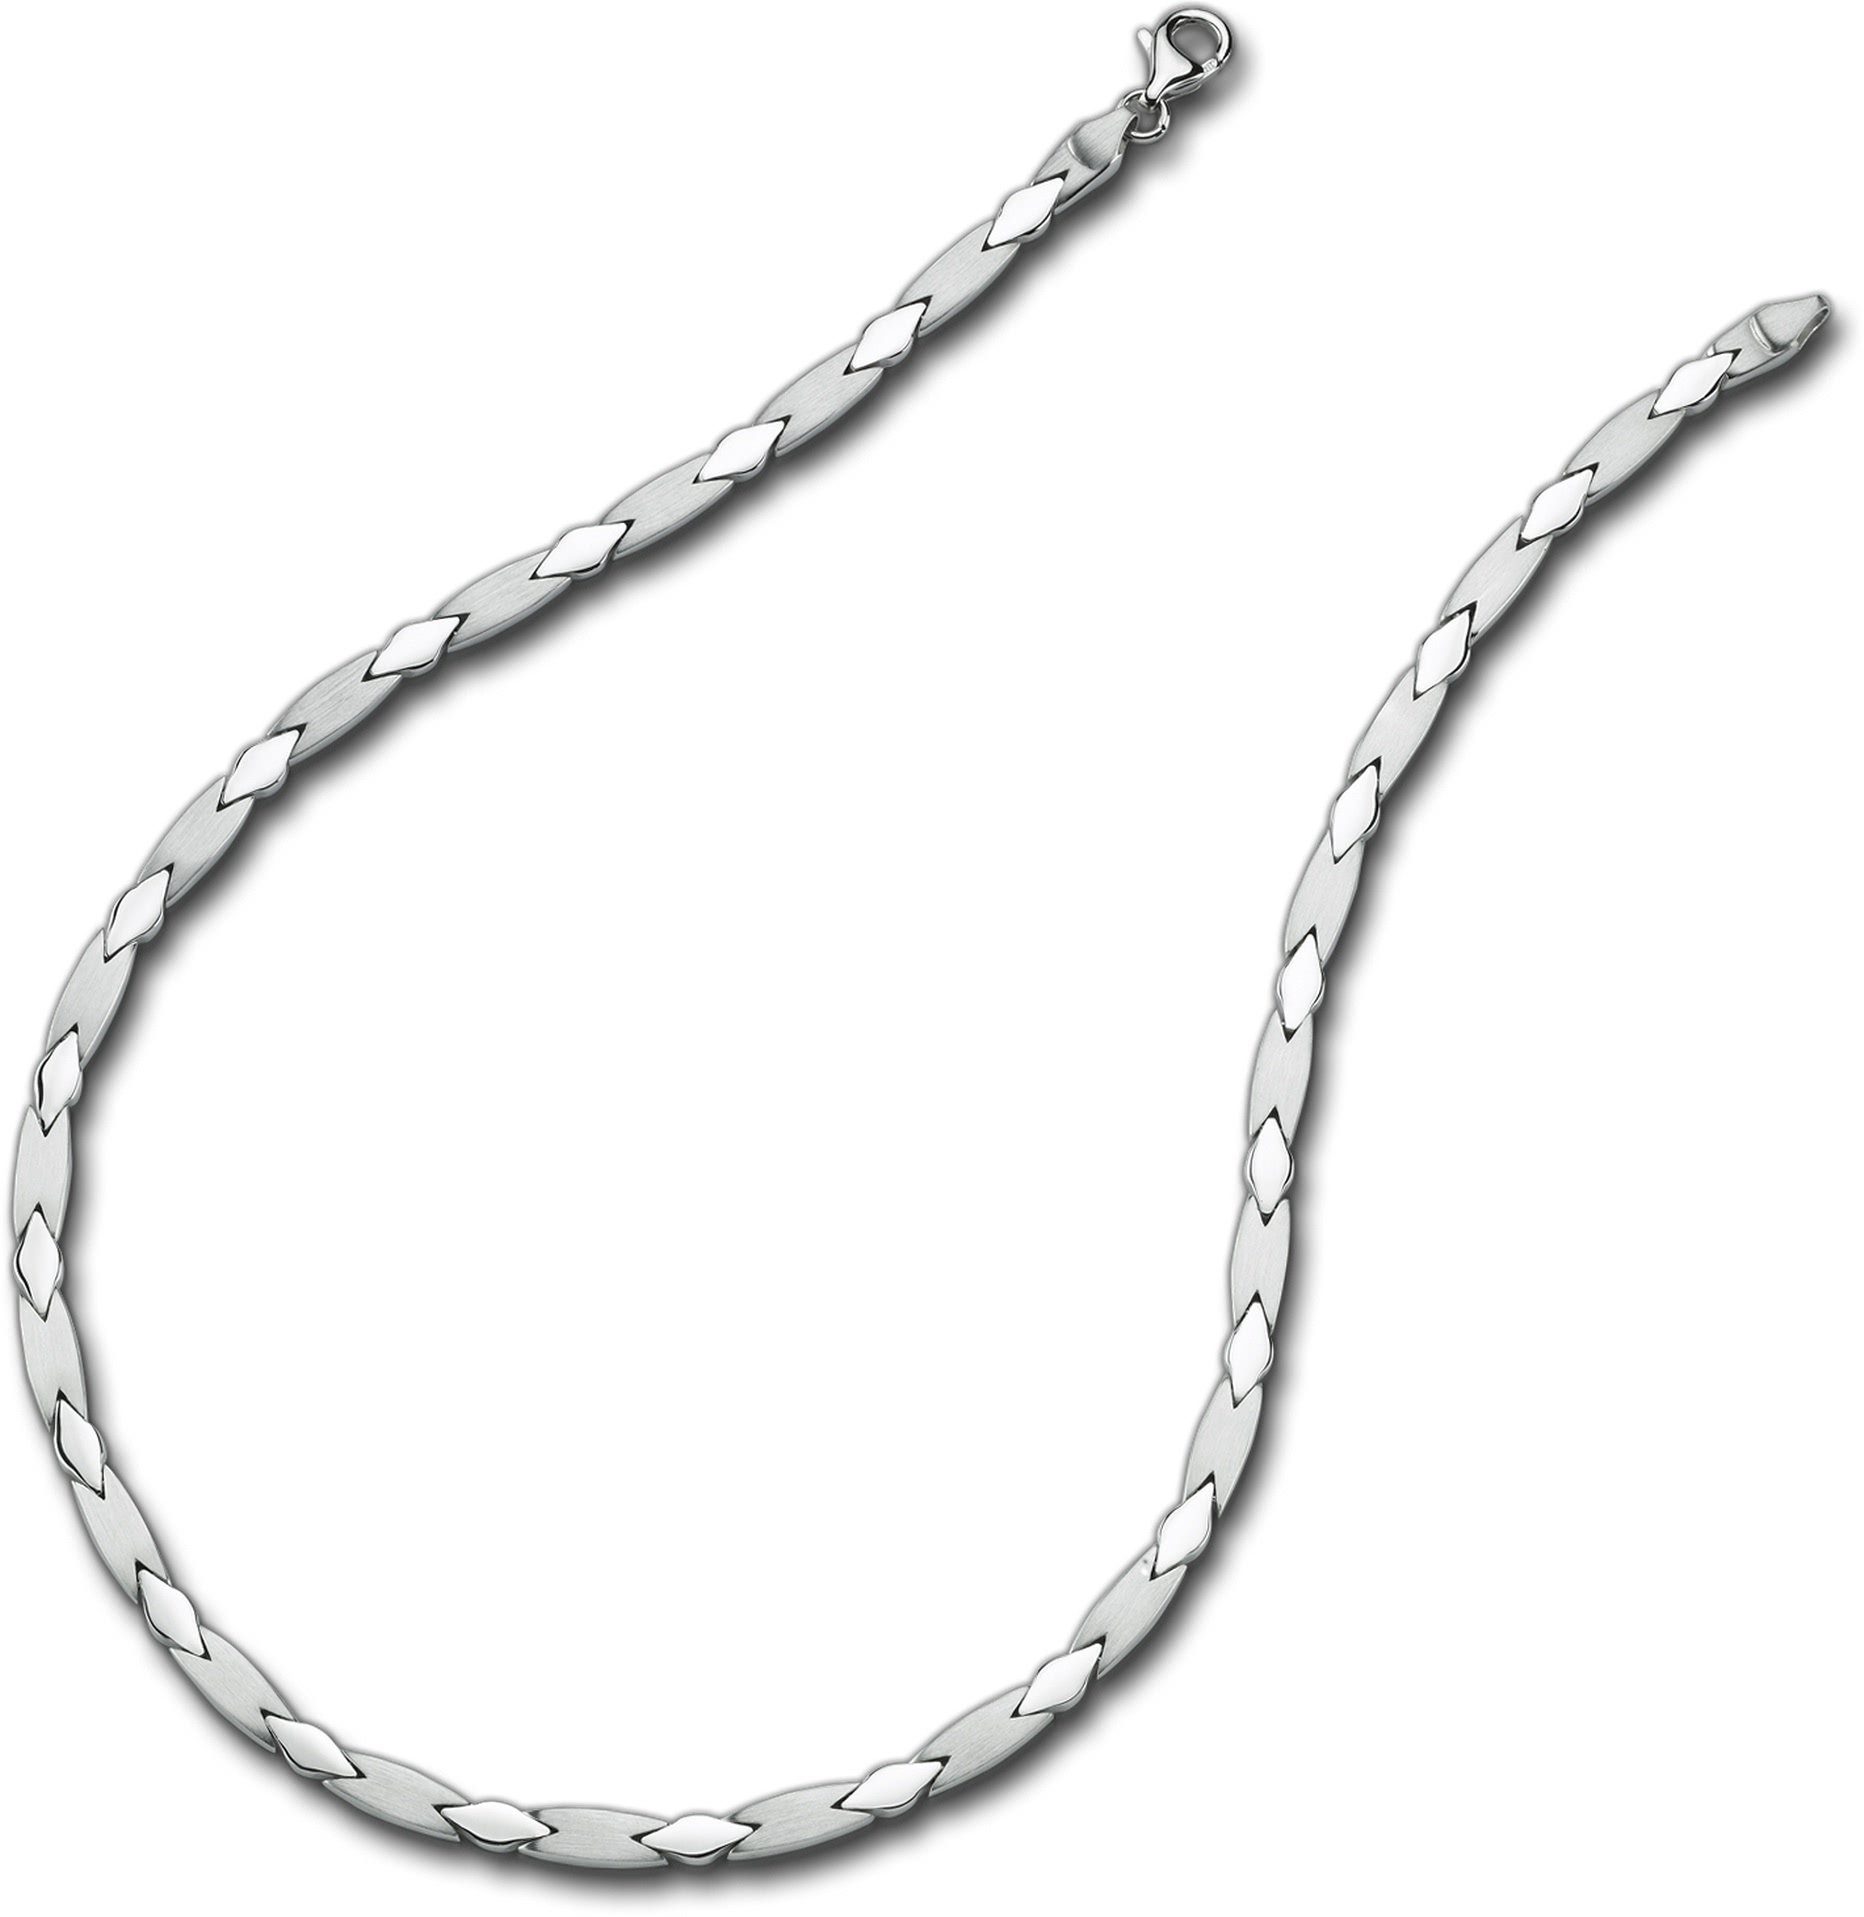 Sterling Balia (Collier), 45cm, Halsketten Colliers, Silber(Muster) 925 Balia ca. Damen Collier Damen für Halskette Collier